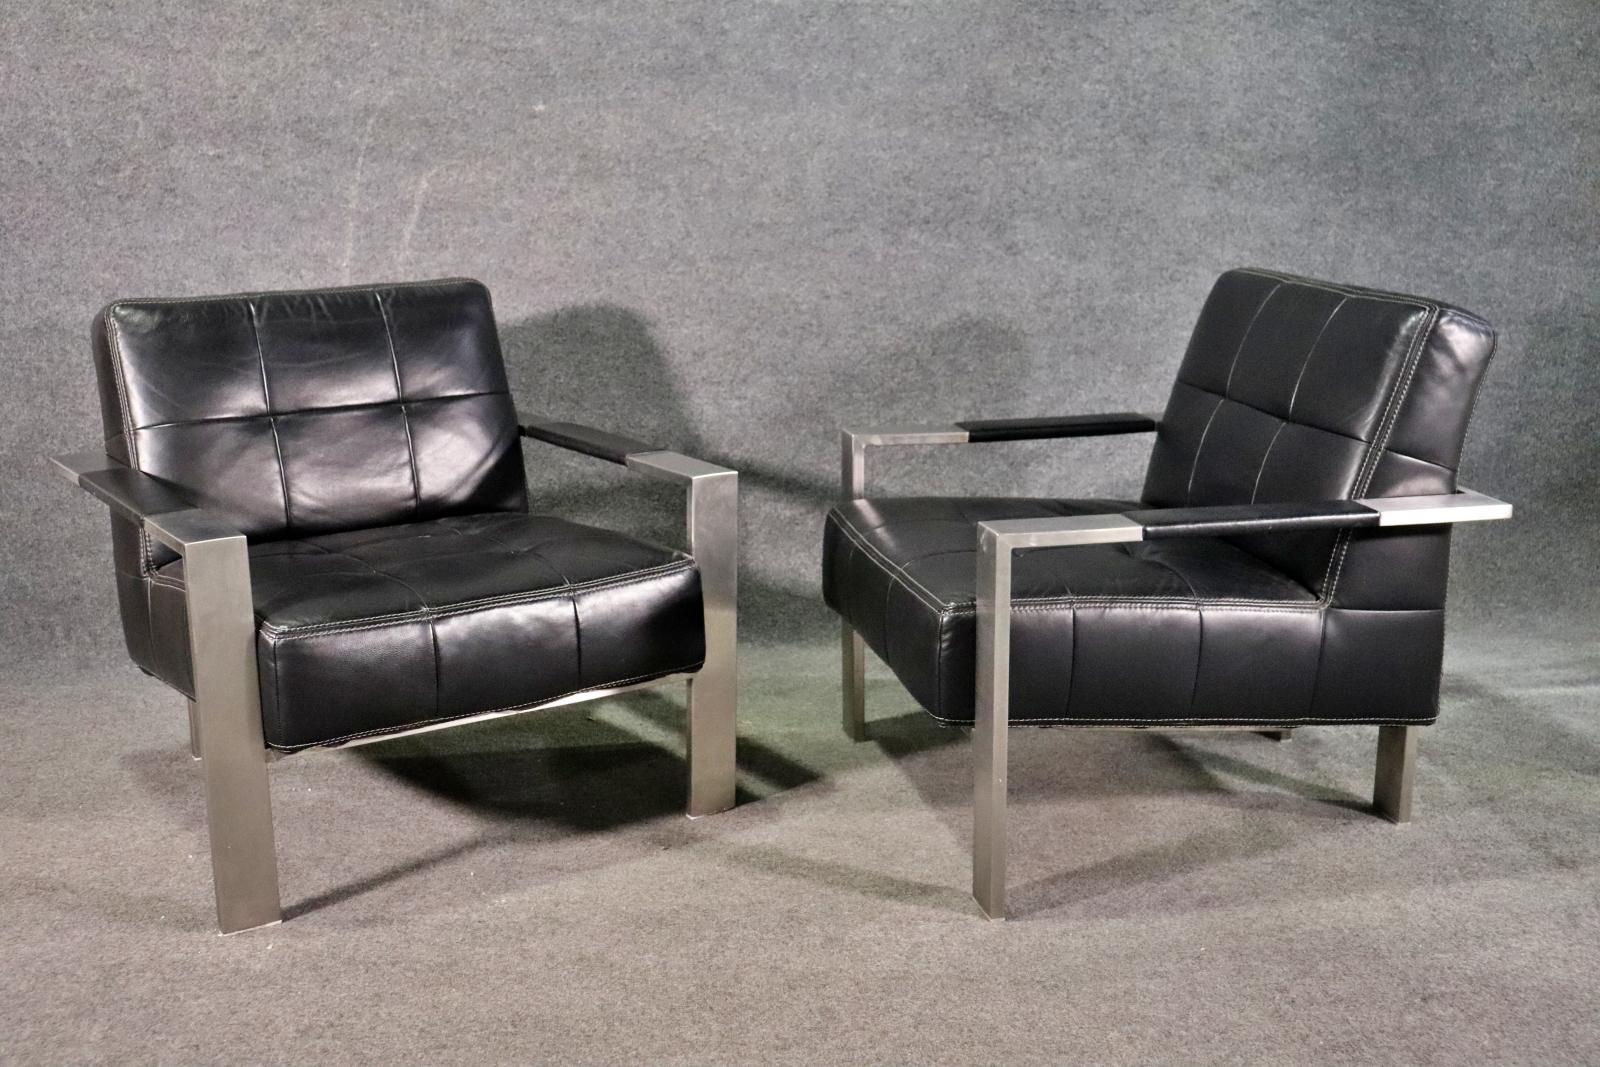 Paire de chaises longues de style mid-century par Paul Brayton. La large armature métallique soutient l'assise touffue.
Veuillez confirmer le lieu NY ou NJ